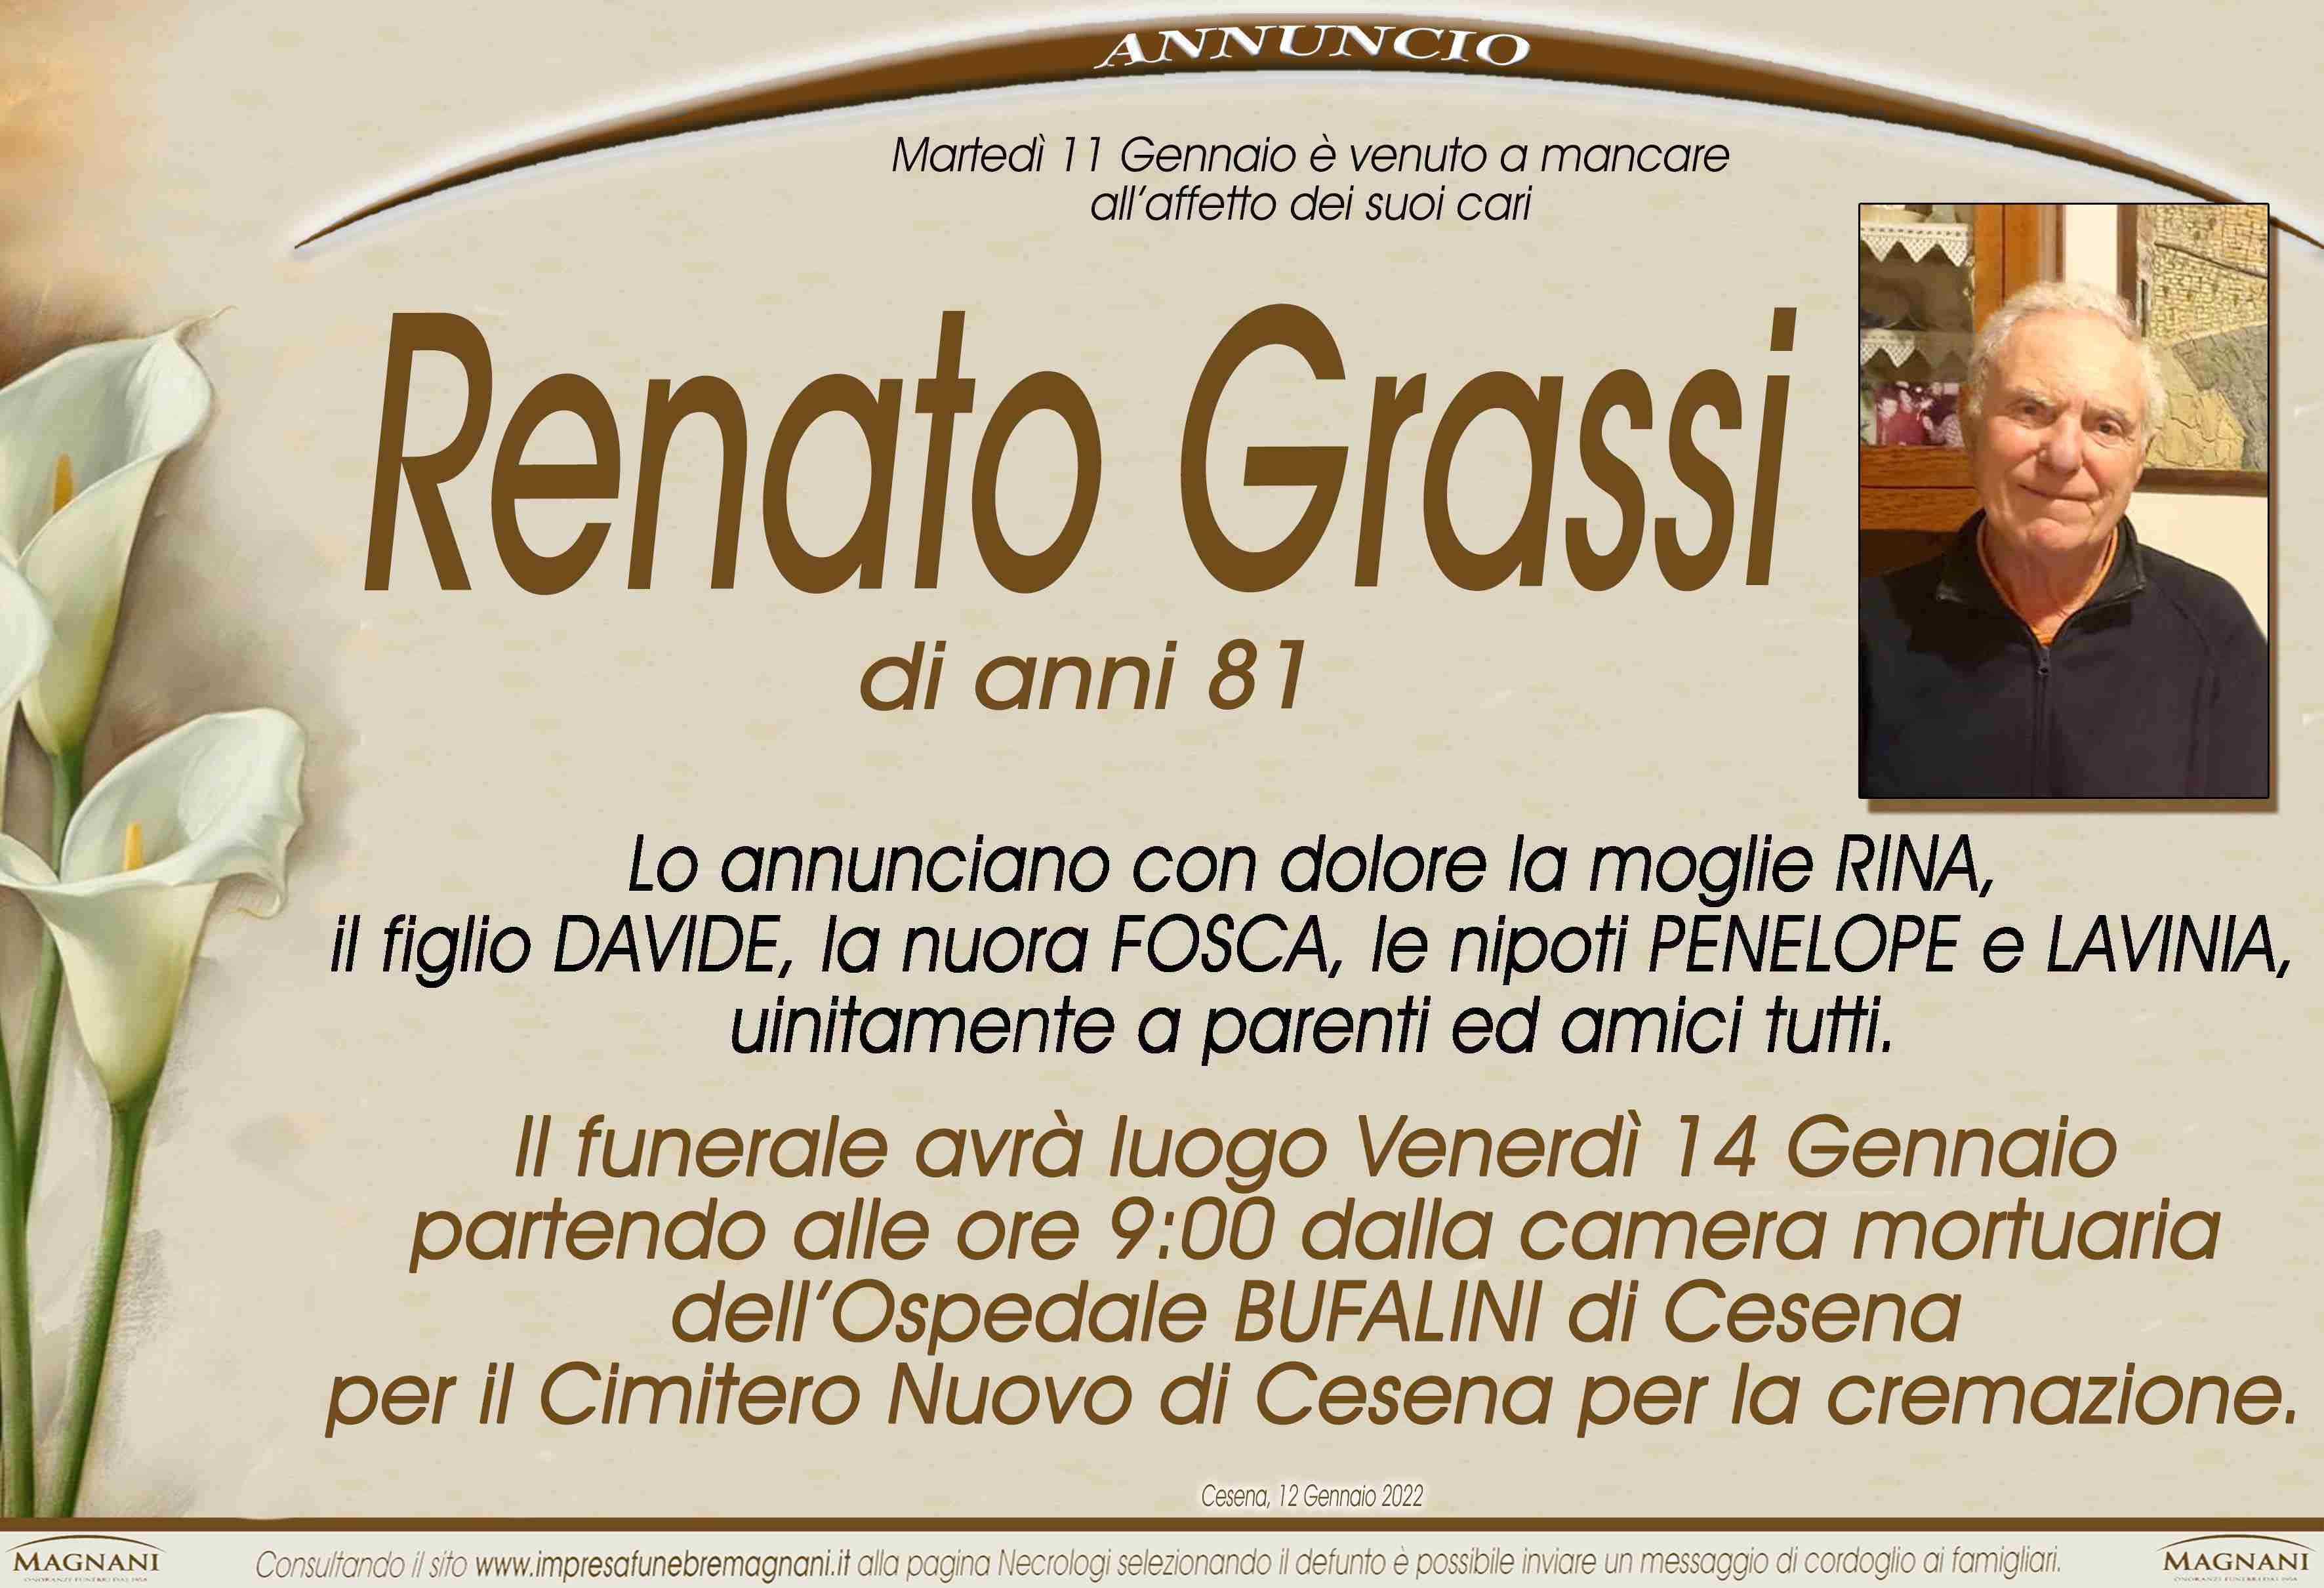 Renato Grassi